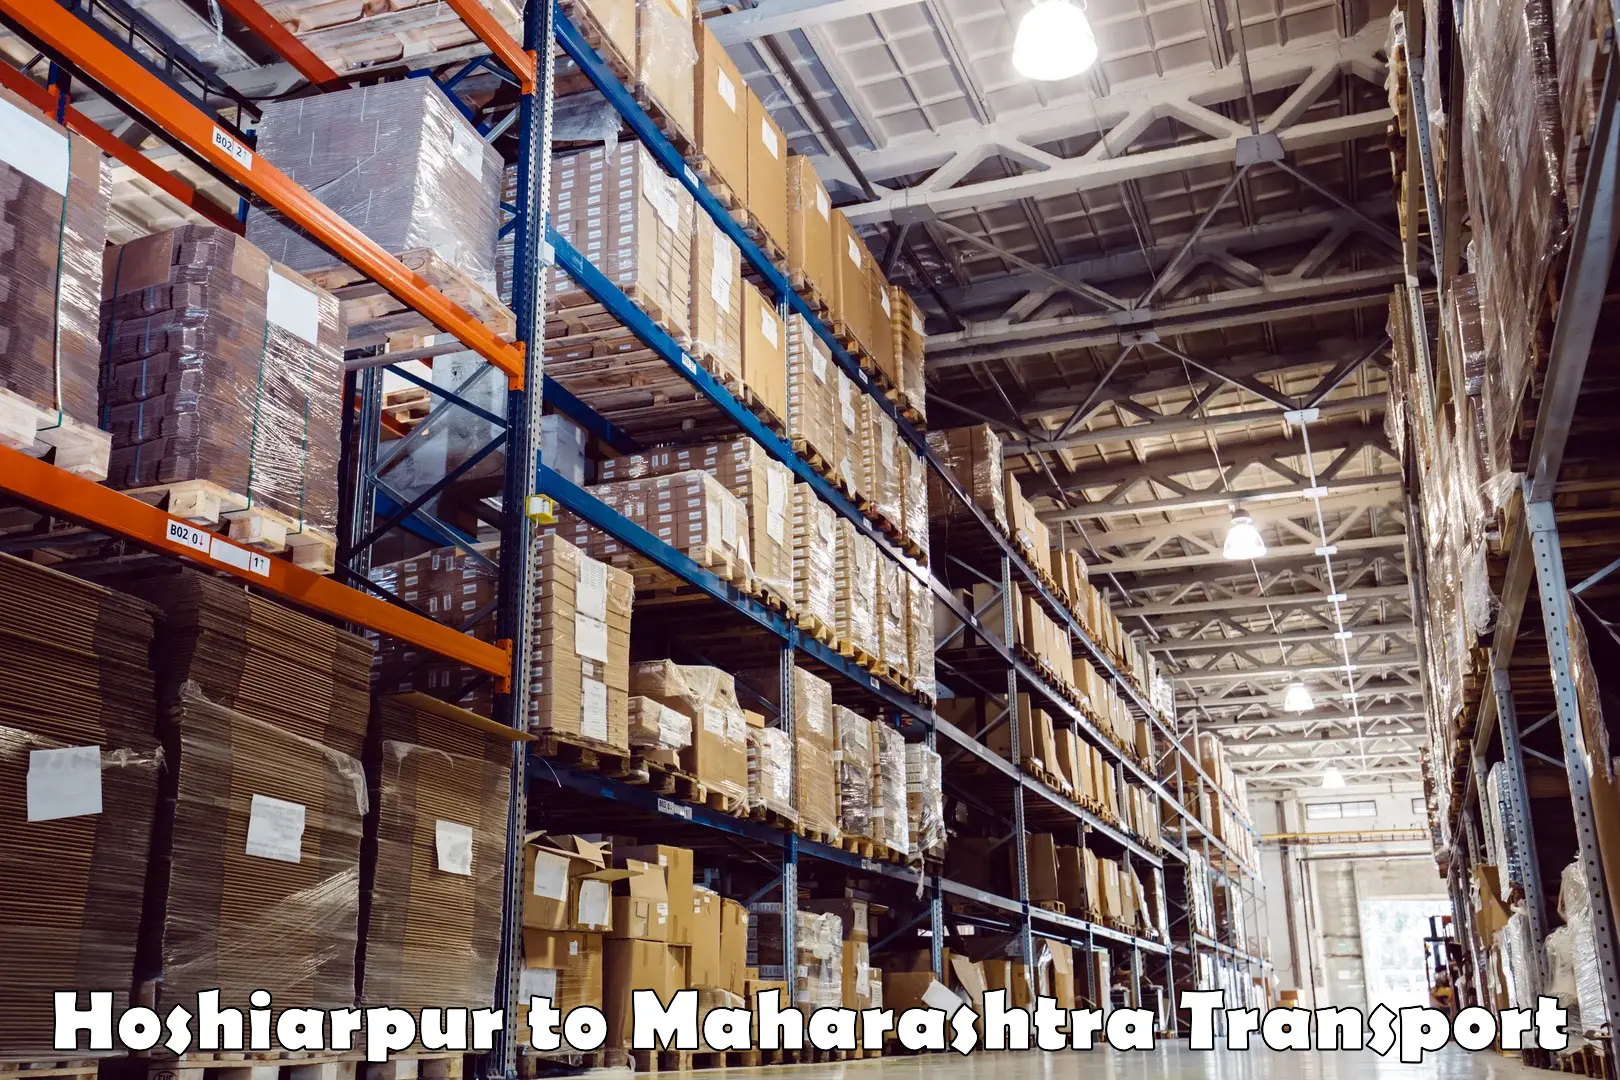 Transportation services Hoshiarpur to Maharashtra